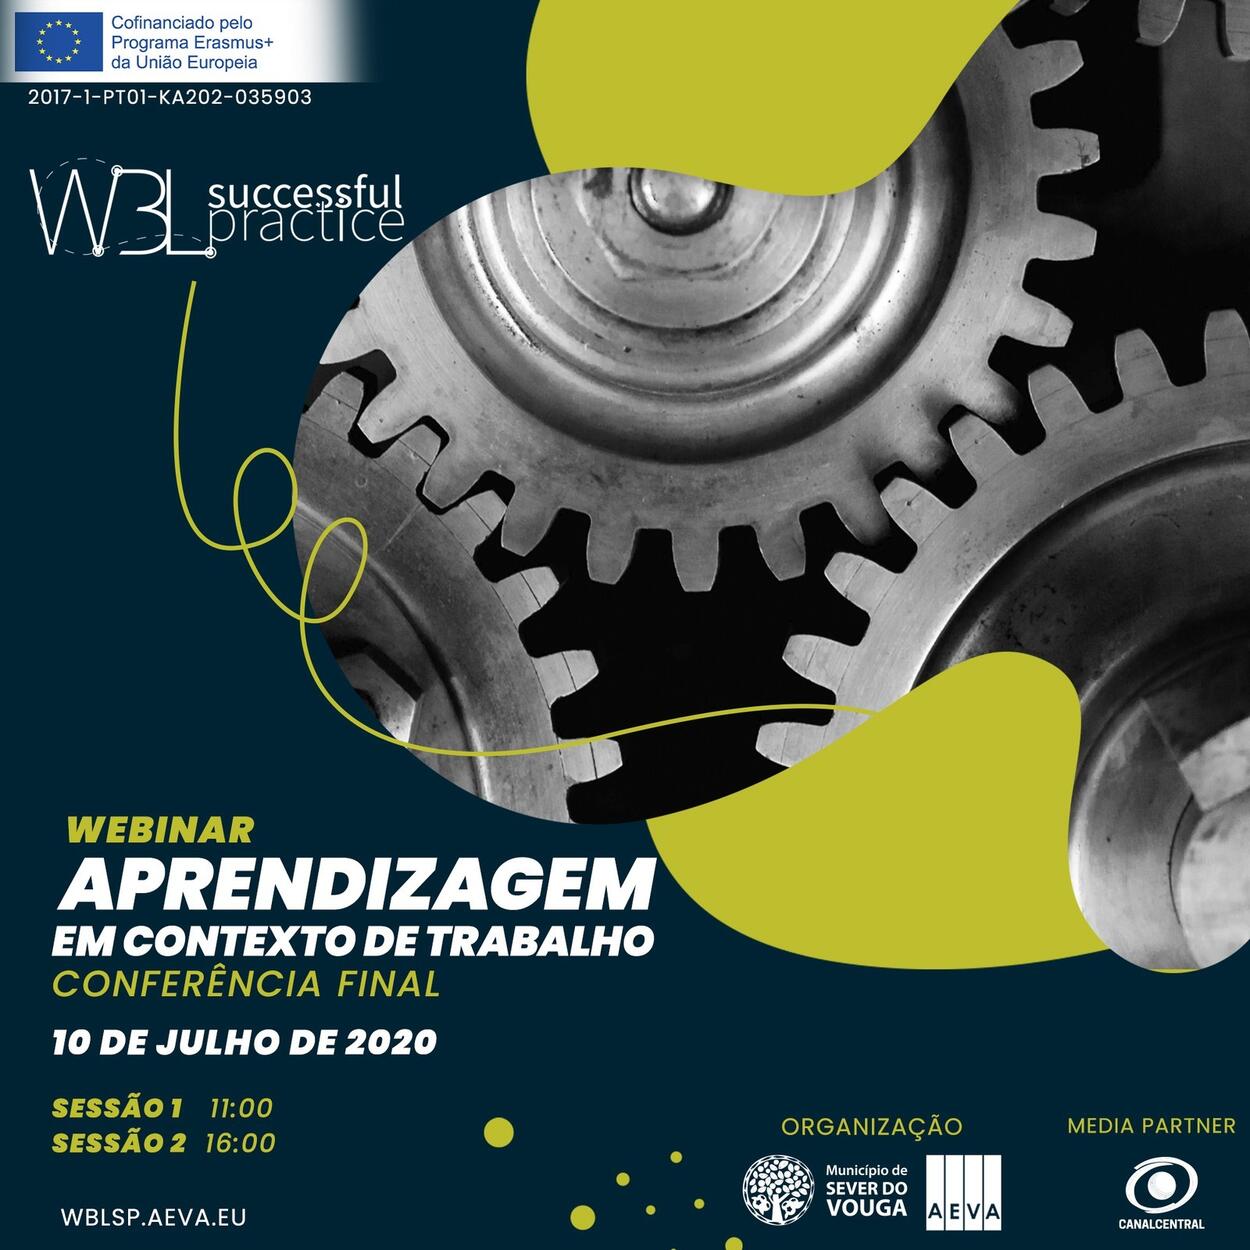 CONVITE - Conferência Final "Aprendizagem em Contexto de Trabalho" (Webinar) | 10 julho 2020 | 11...